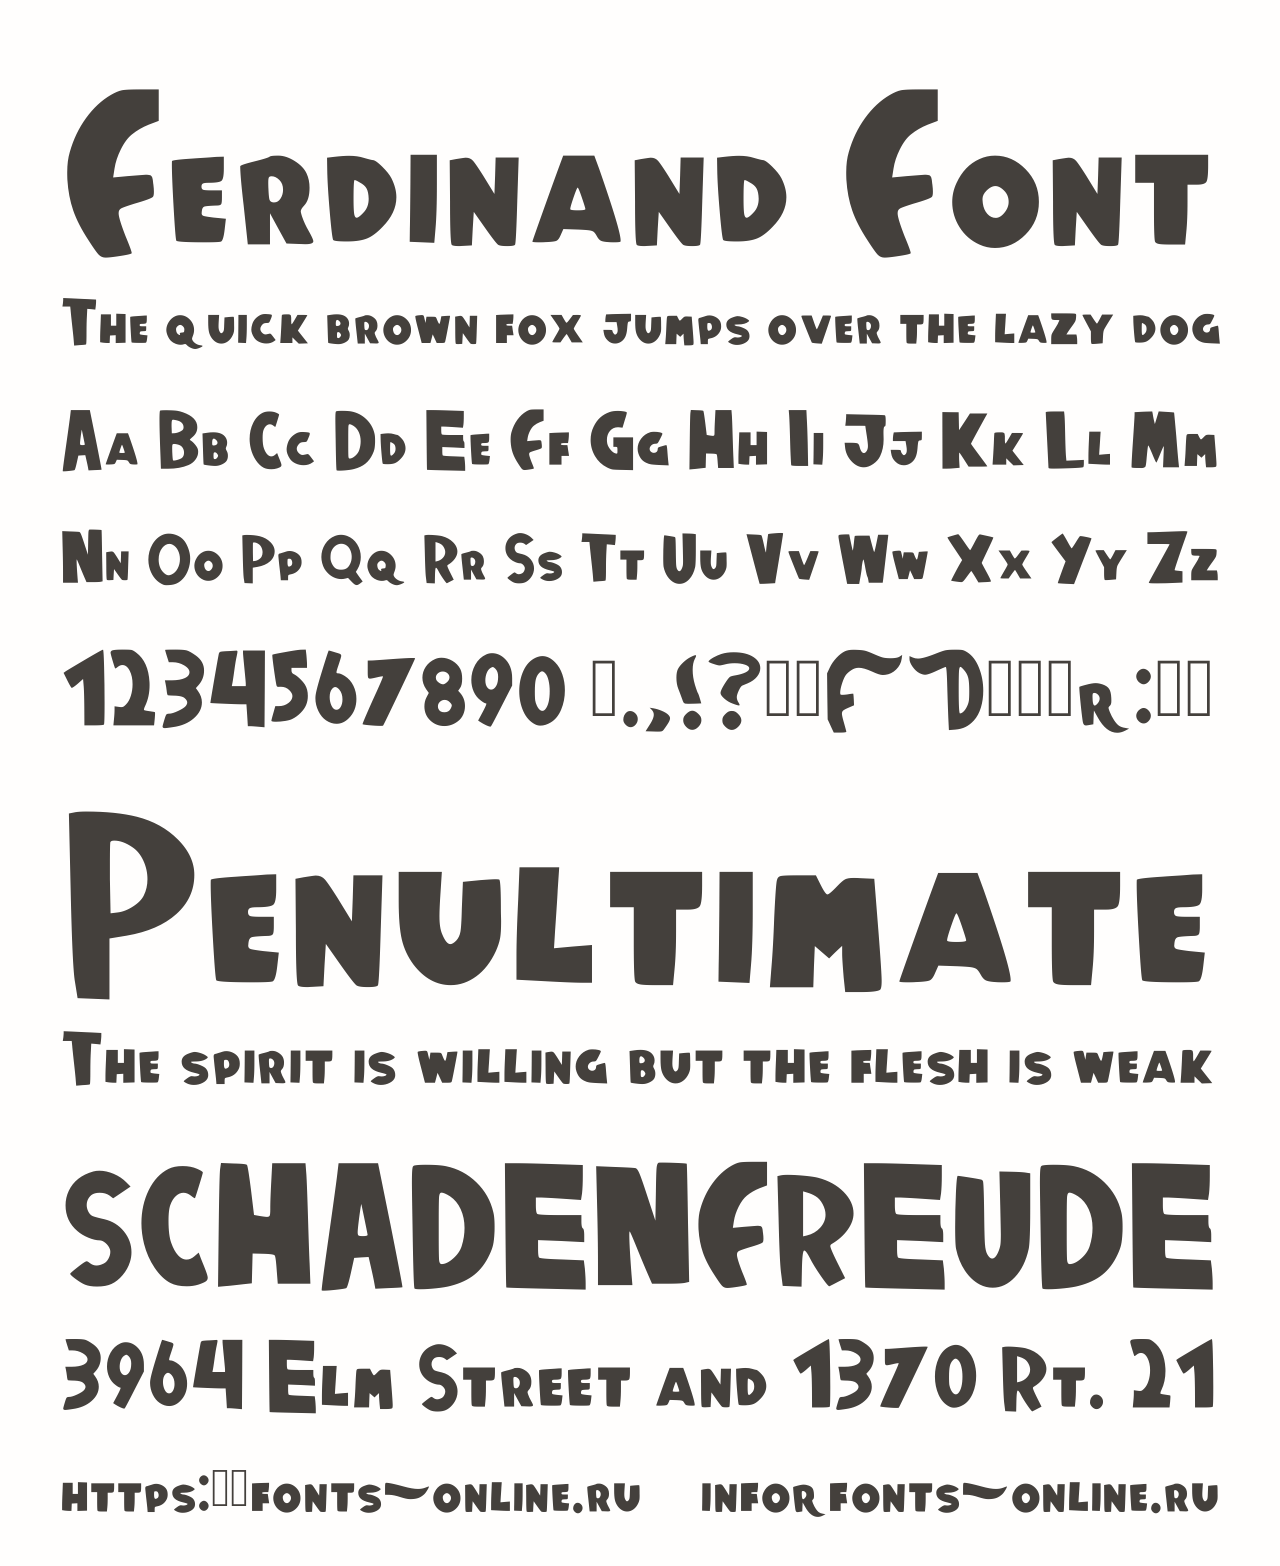 Font Ferdinand Font